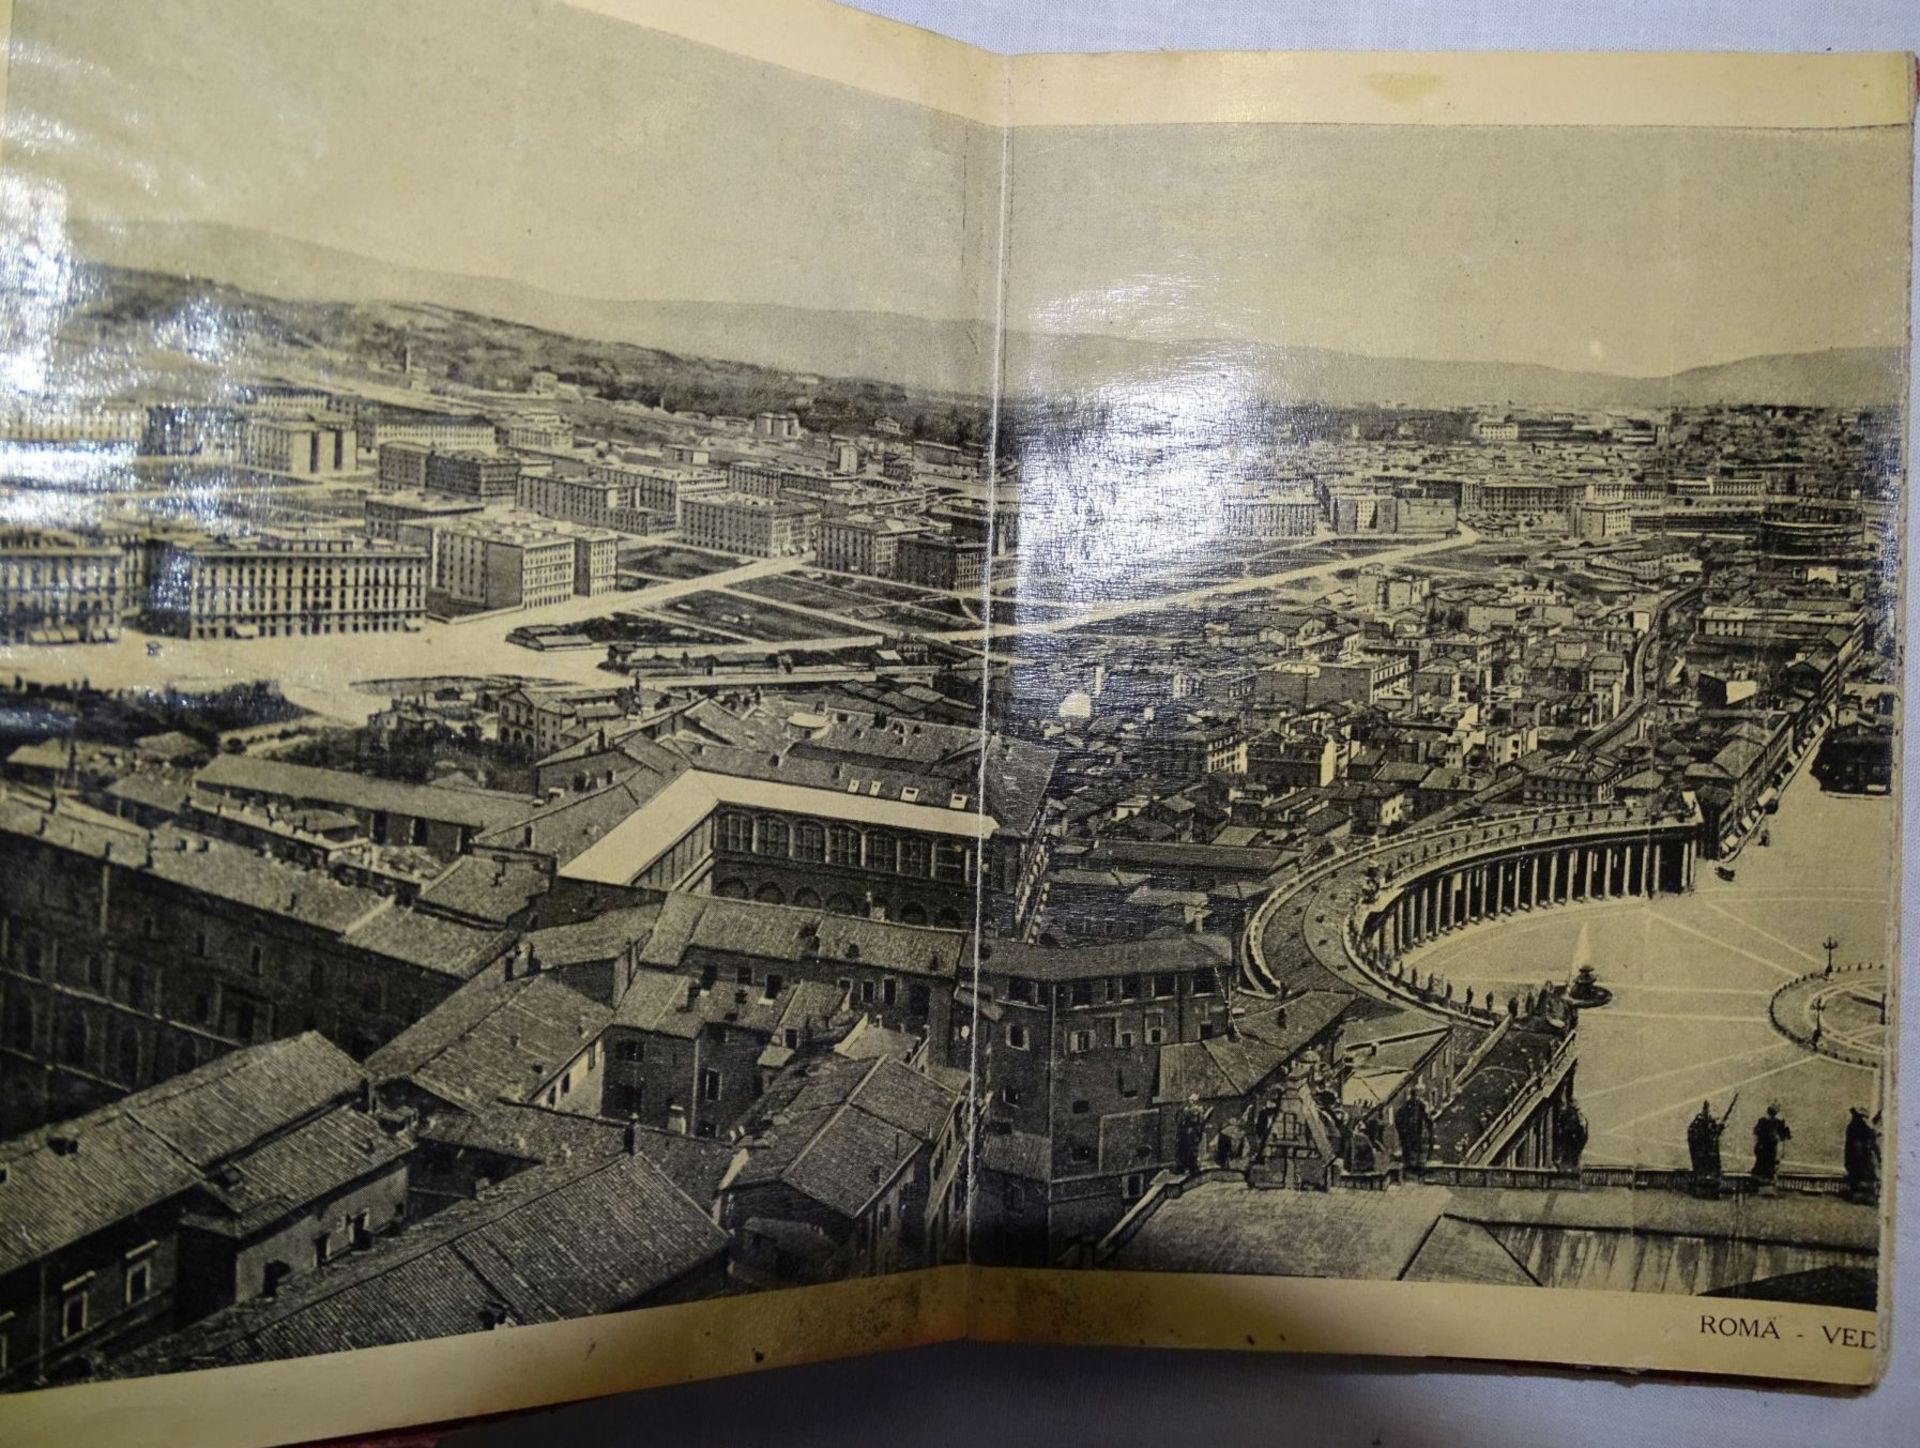 Leporello "Ricordo di Roma" um 1900, 32 Ansichten, Alters-u. Gebrauchsspuren- - -22.61 % buyer's - Bild 2 aus 4